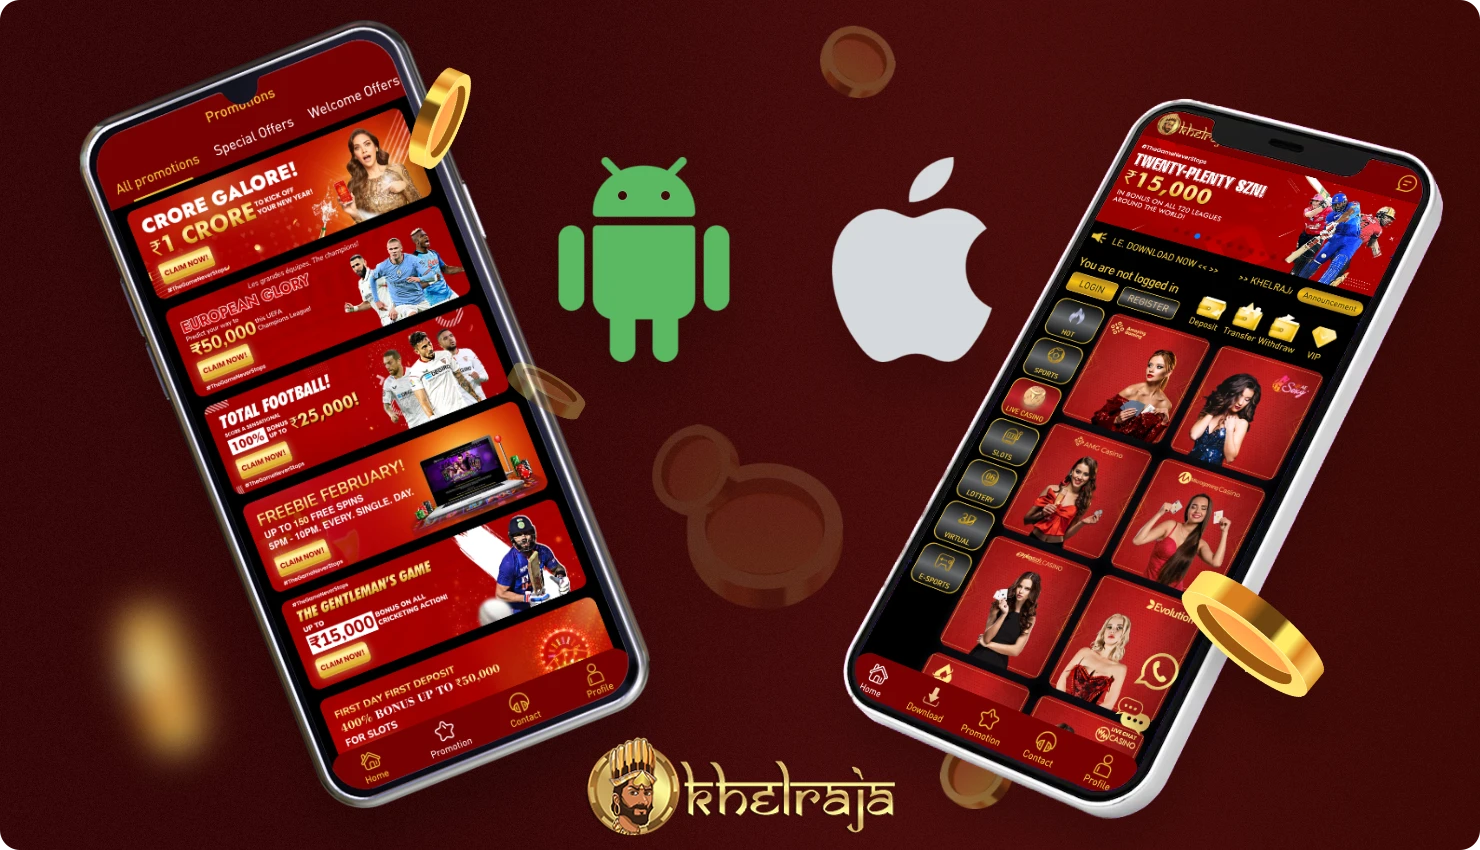 मुफ्त Khelraja मोबाइल ऐप Android और iOS दोनों उपकरणों के उपयोगकर्ताओं के लिए उपलब्ध है